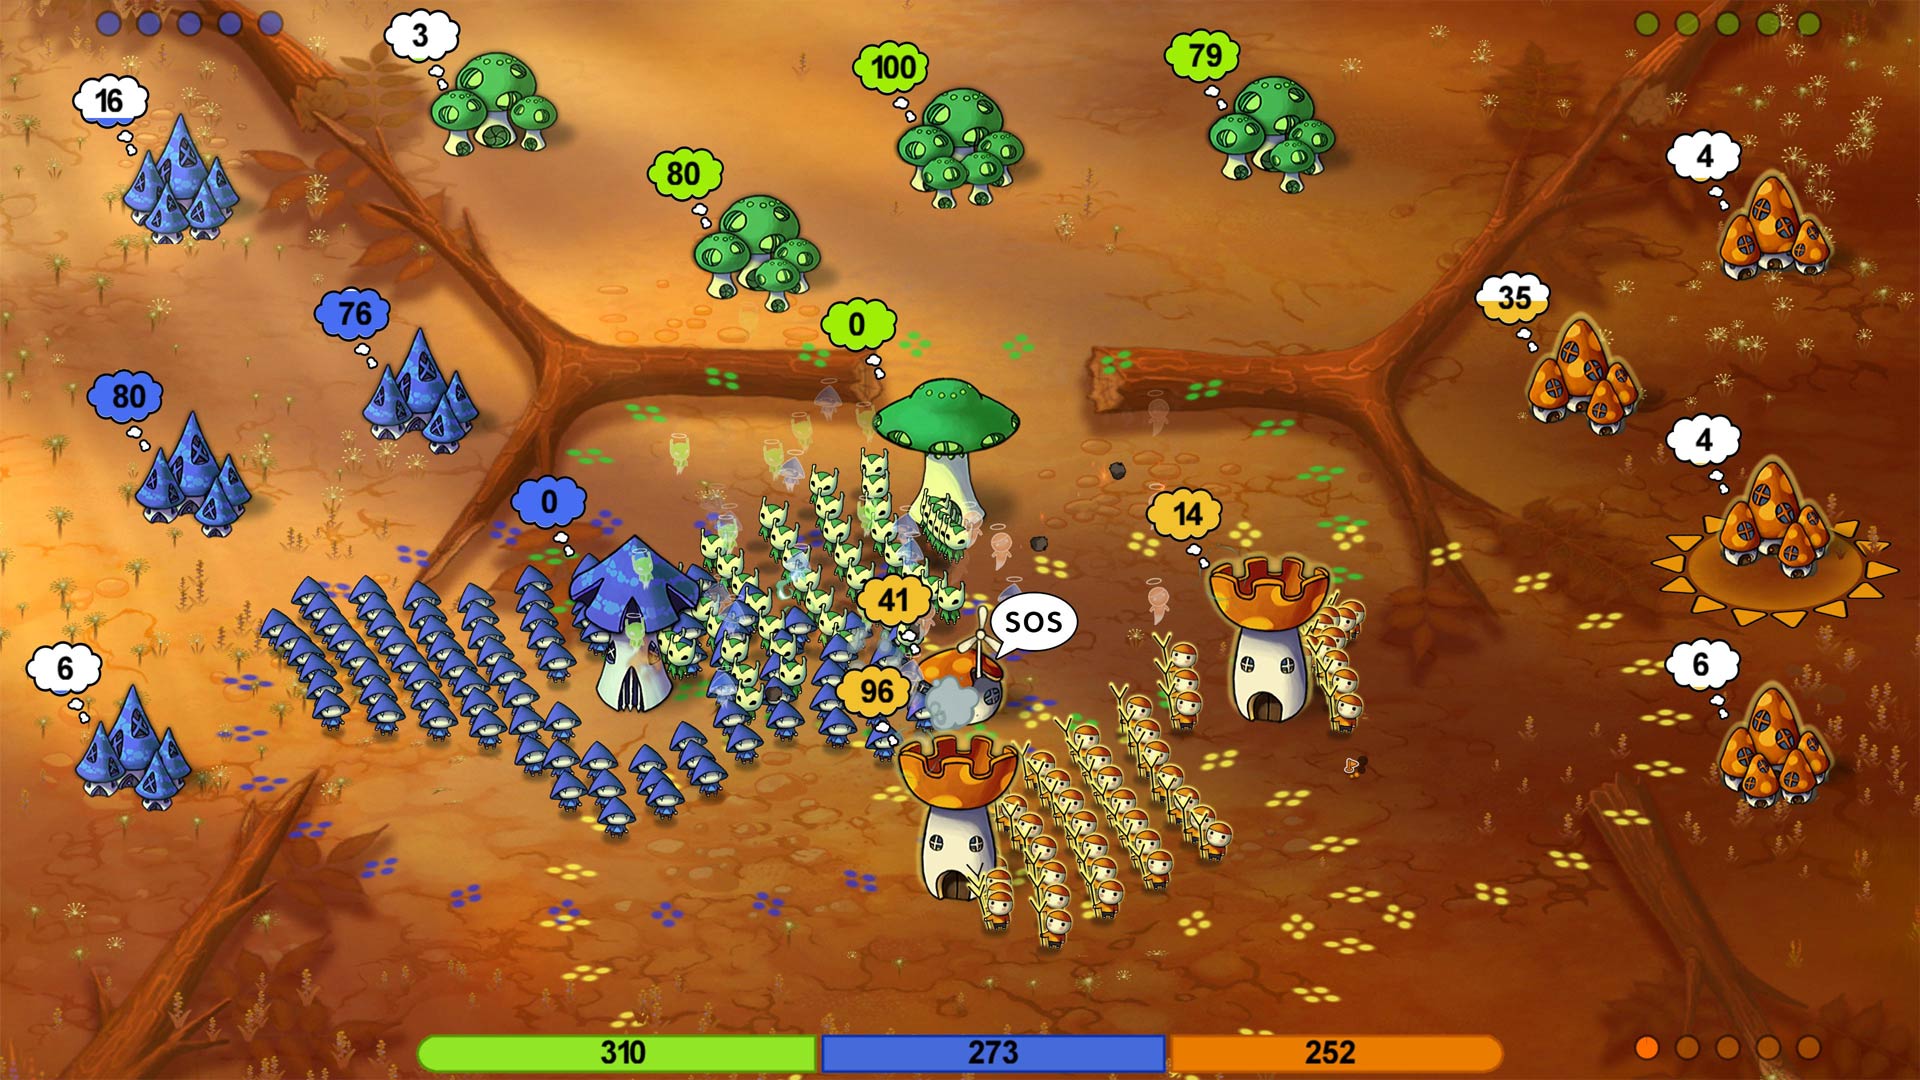 mushroom wars online game